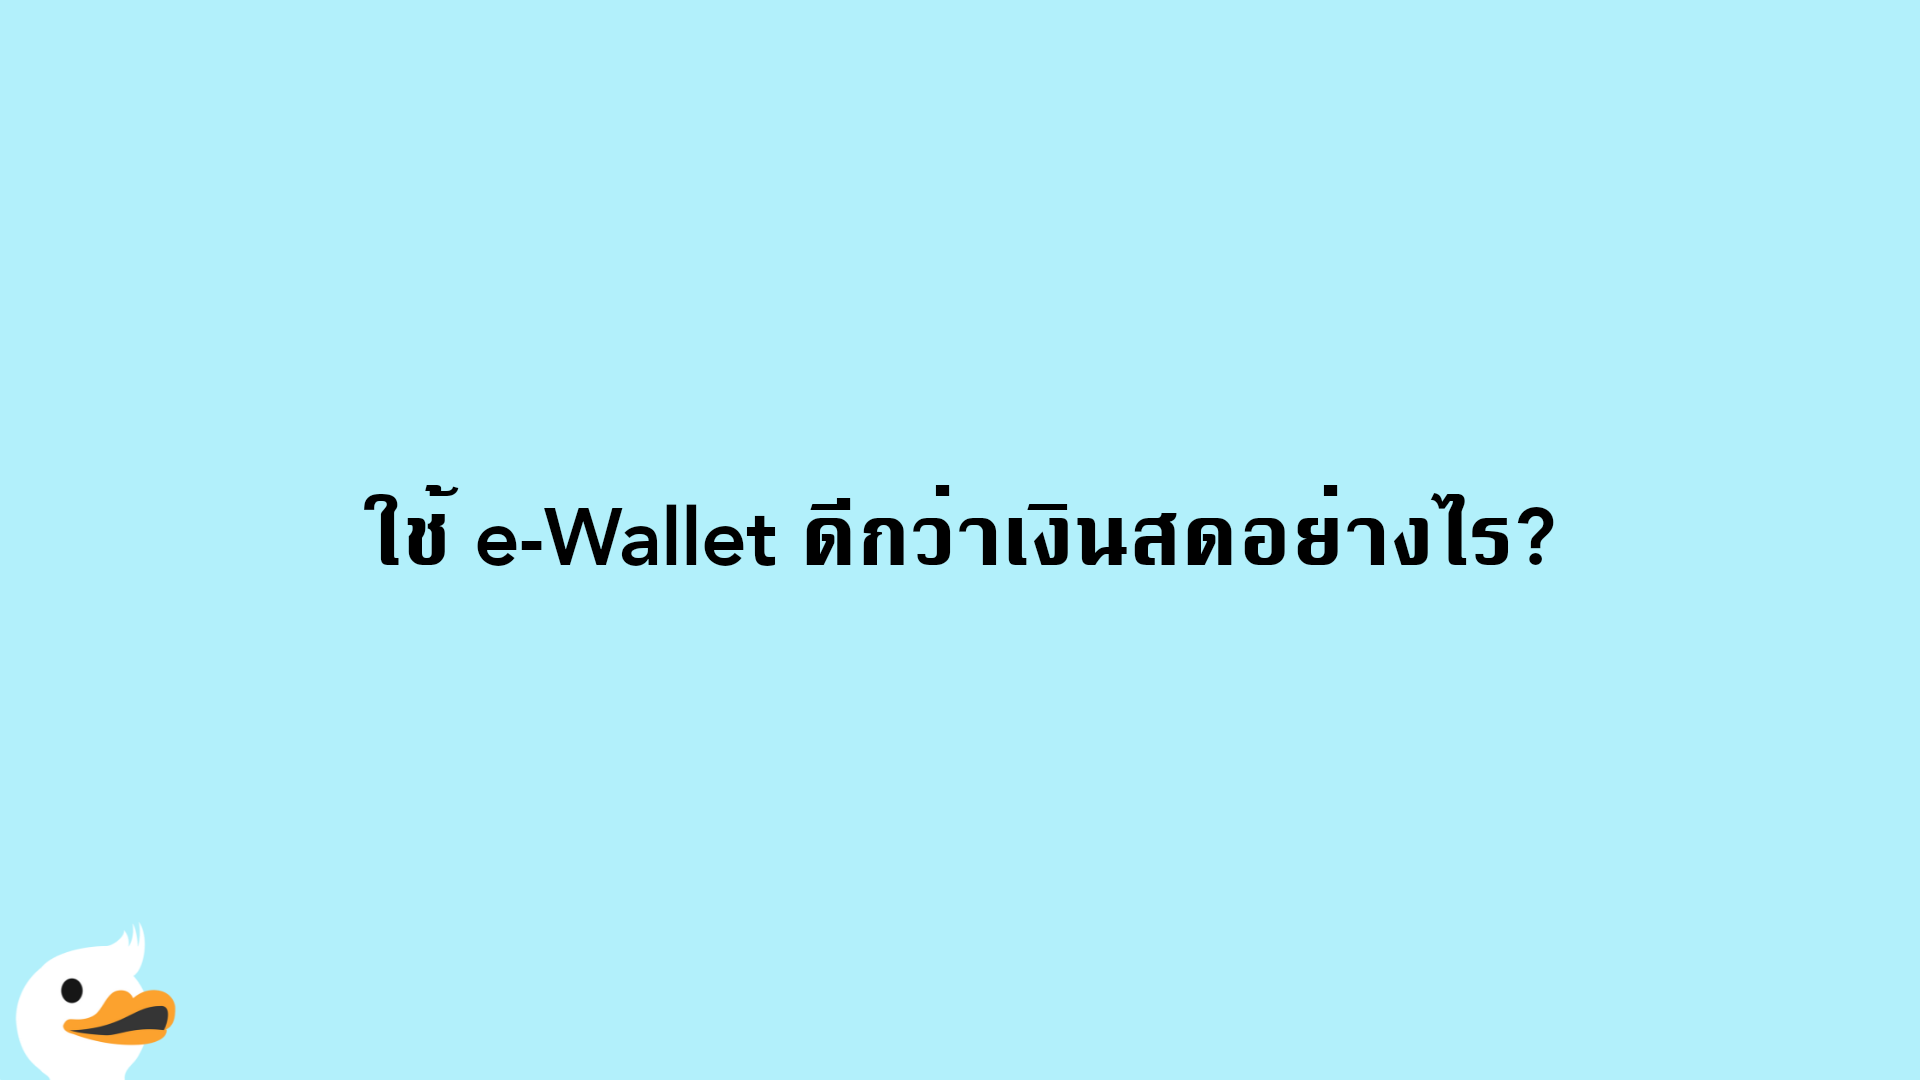 ใช้ e-Wallet ดีกว่าเงินสดอย่างไร?